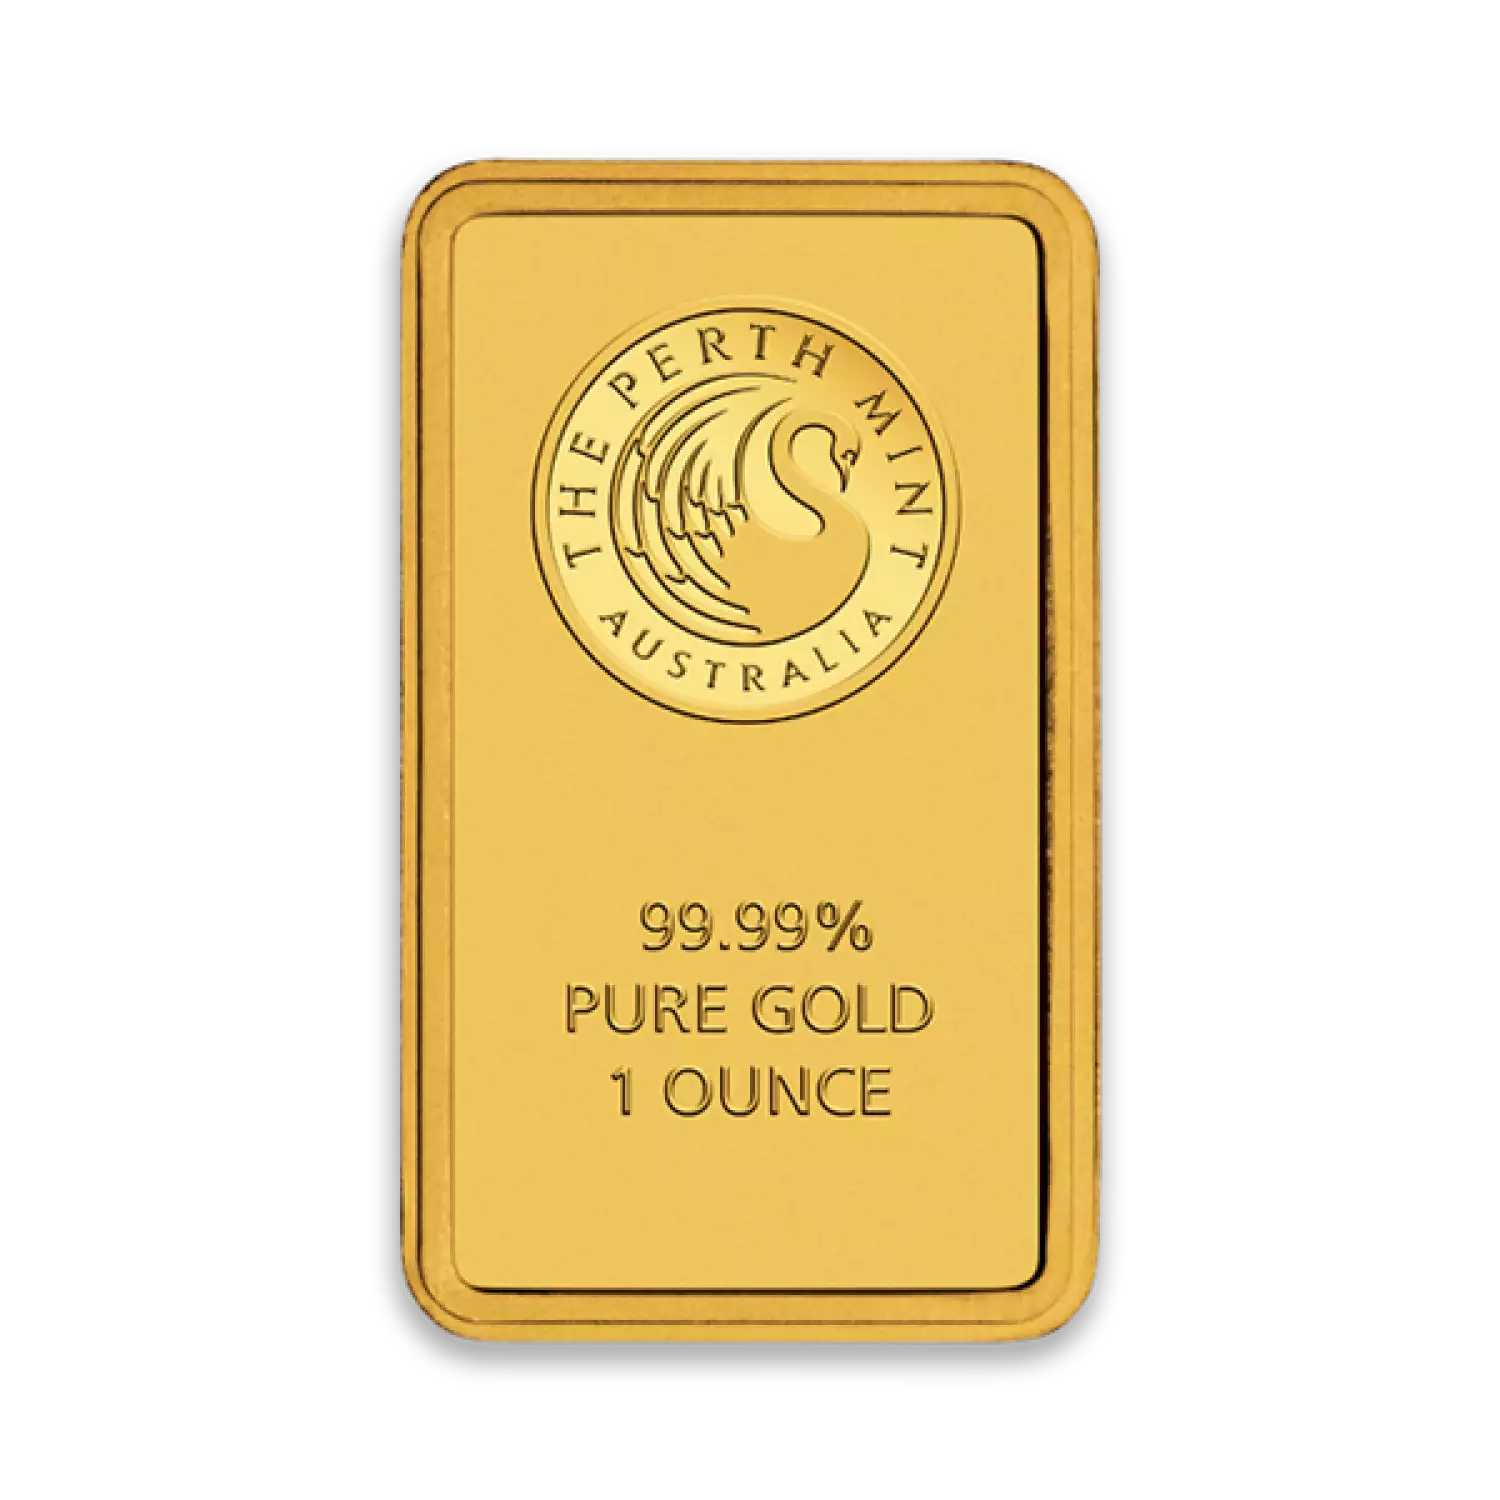 1oz Australian Perth Mint gold bar - minted